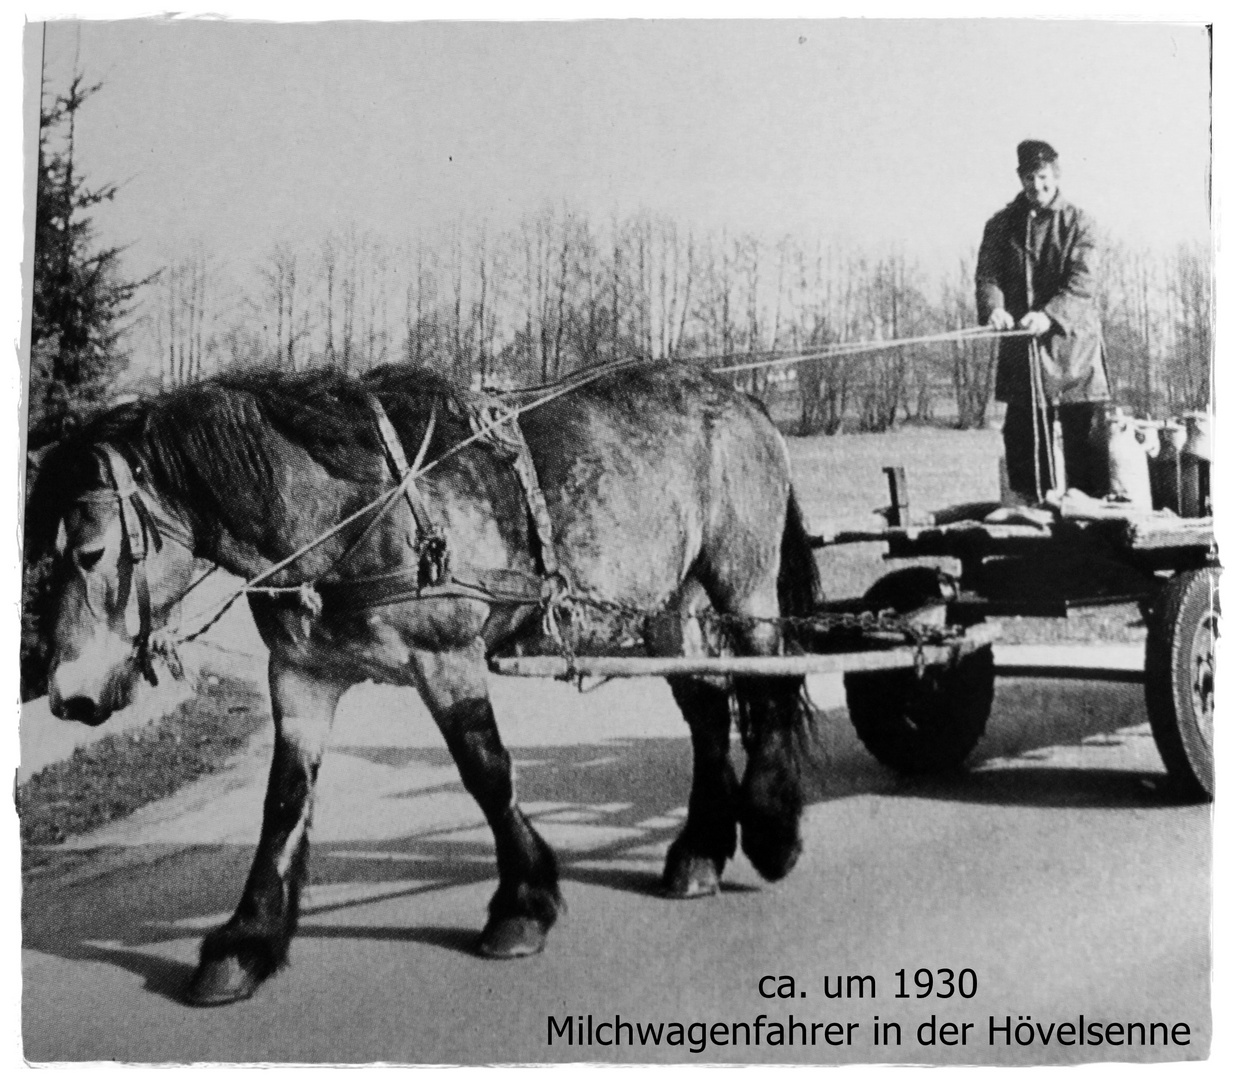 Milchwagenfahrer um 1930